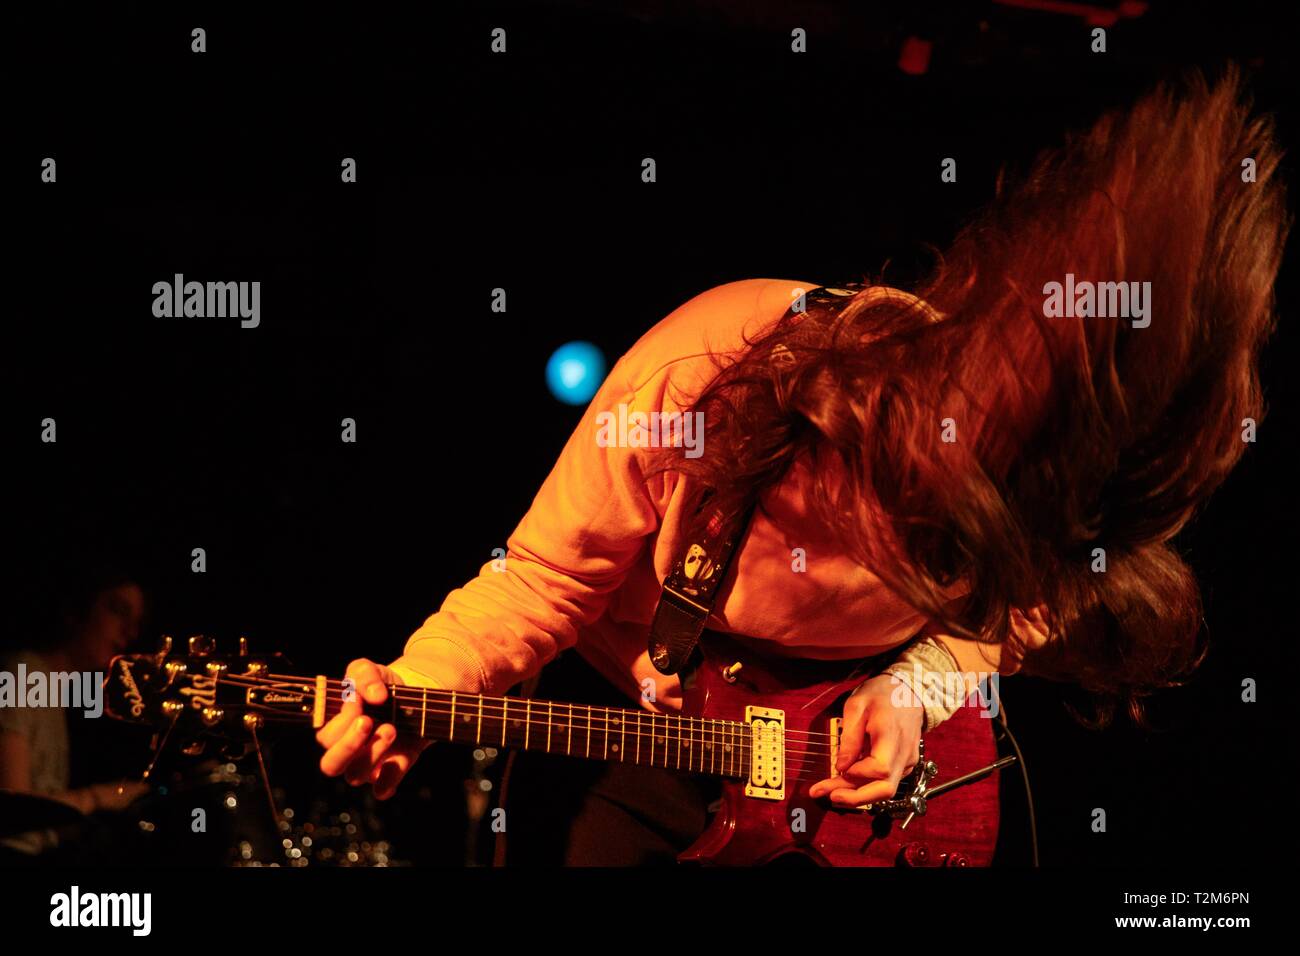 James Rowland visto tocar una guitarra como Sarah Bonito canta mientras la  banda de rock indie británico Kero Kero Bonito realiza en el Bluebird en  Bloomington, Indiana, durante la gira norteamericana. La